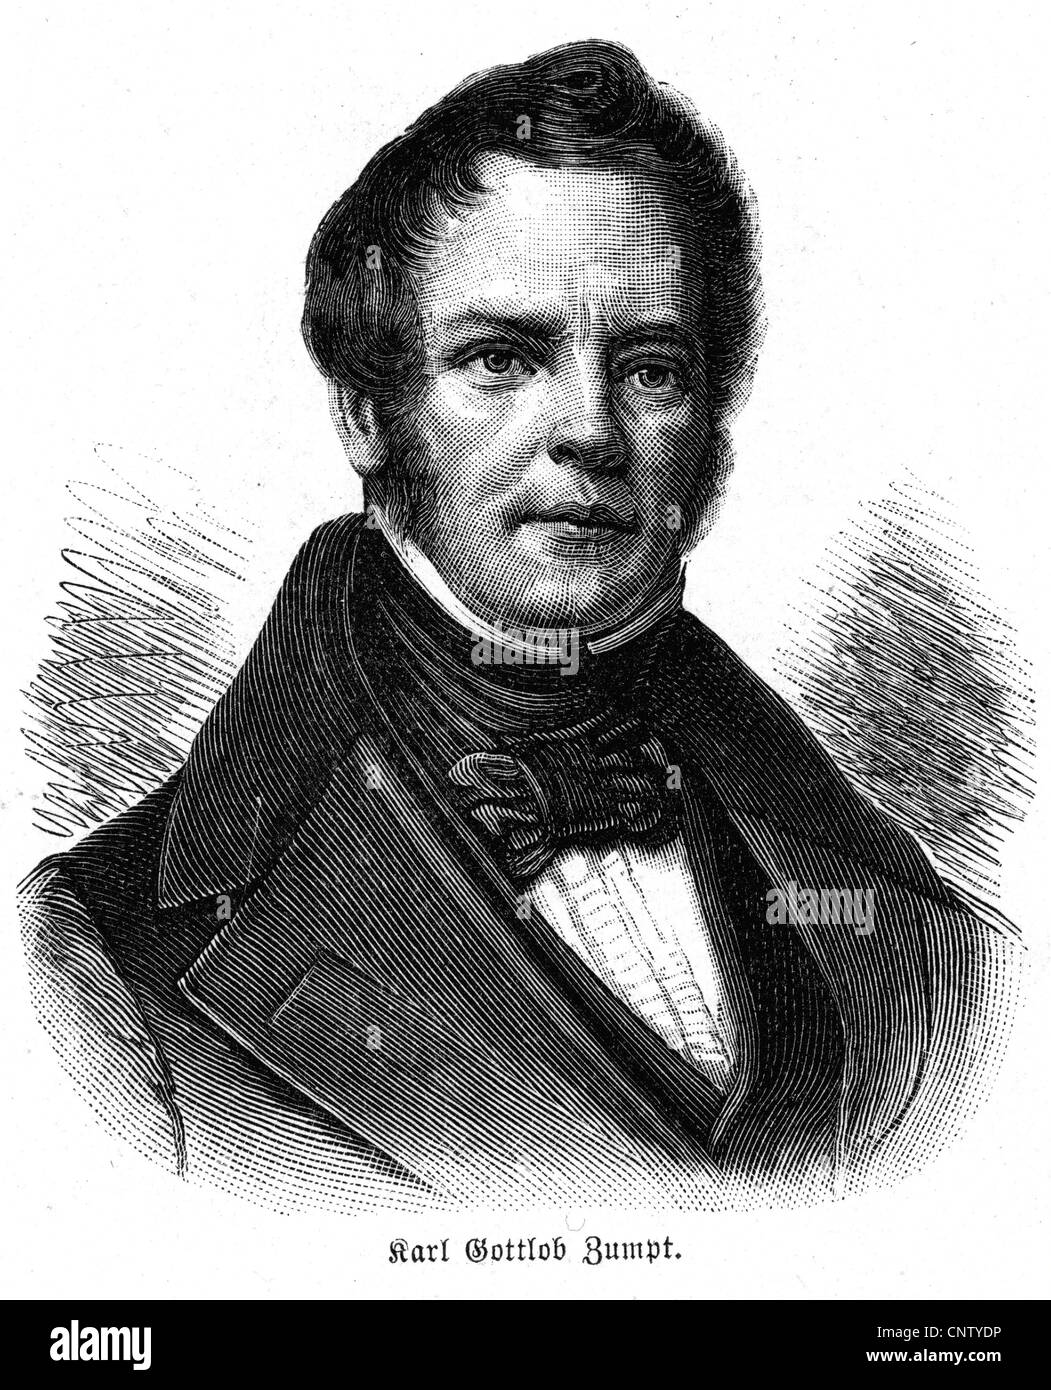 Zumpf, Karl gottlob, 20.3.173 - 25.6.1849, deutscher klassischer Philologe, Porträt, Holzgravur, 19. Jahrhundert, Stockfoto